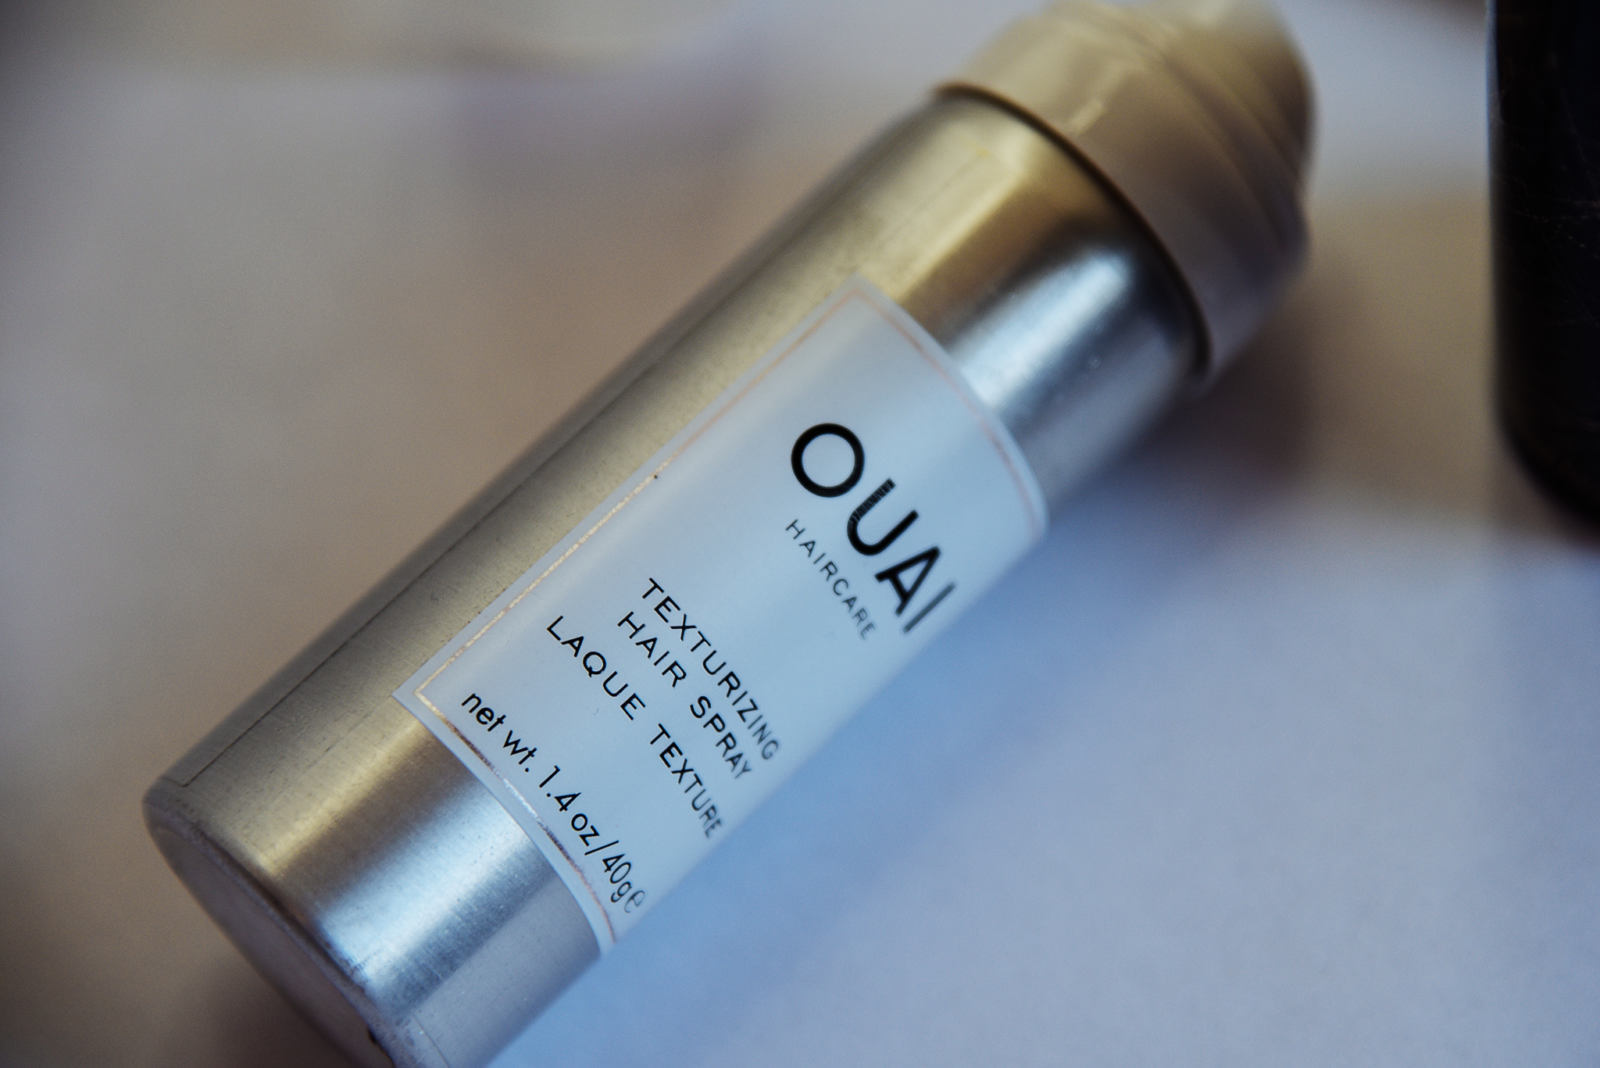 ouai vs oribe texturizing spray